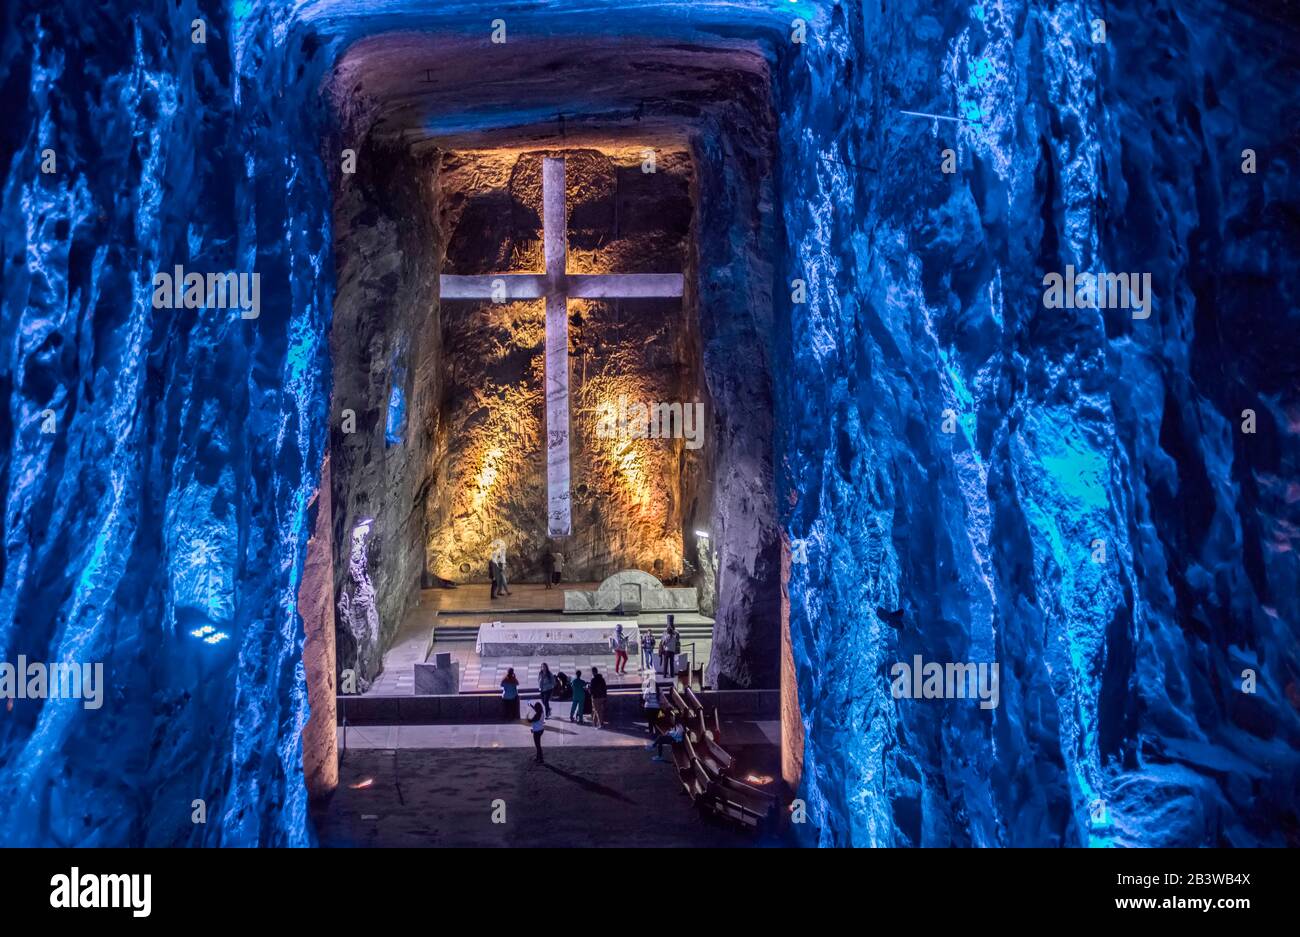 Die Salzkathedrale von Zipaquirá ist eine unterirdische, röm.-katholische Kirche, die in den Tunneln eines Salzbergwerks in einem halitischen Berg in der Nähe errichtet wurde Stockfoto